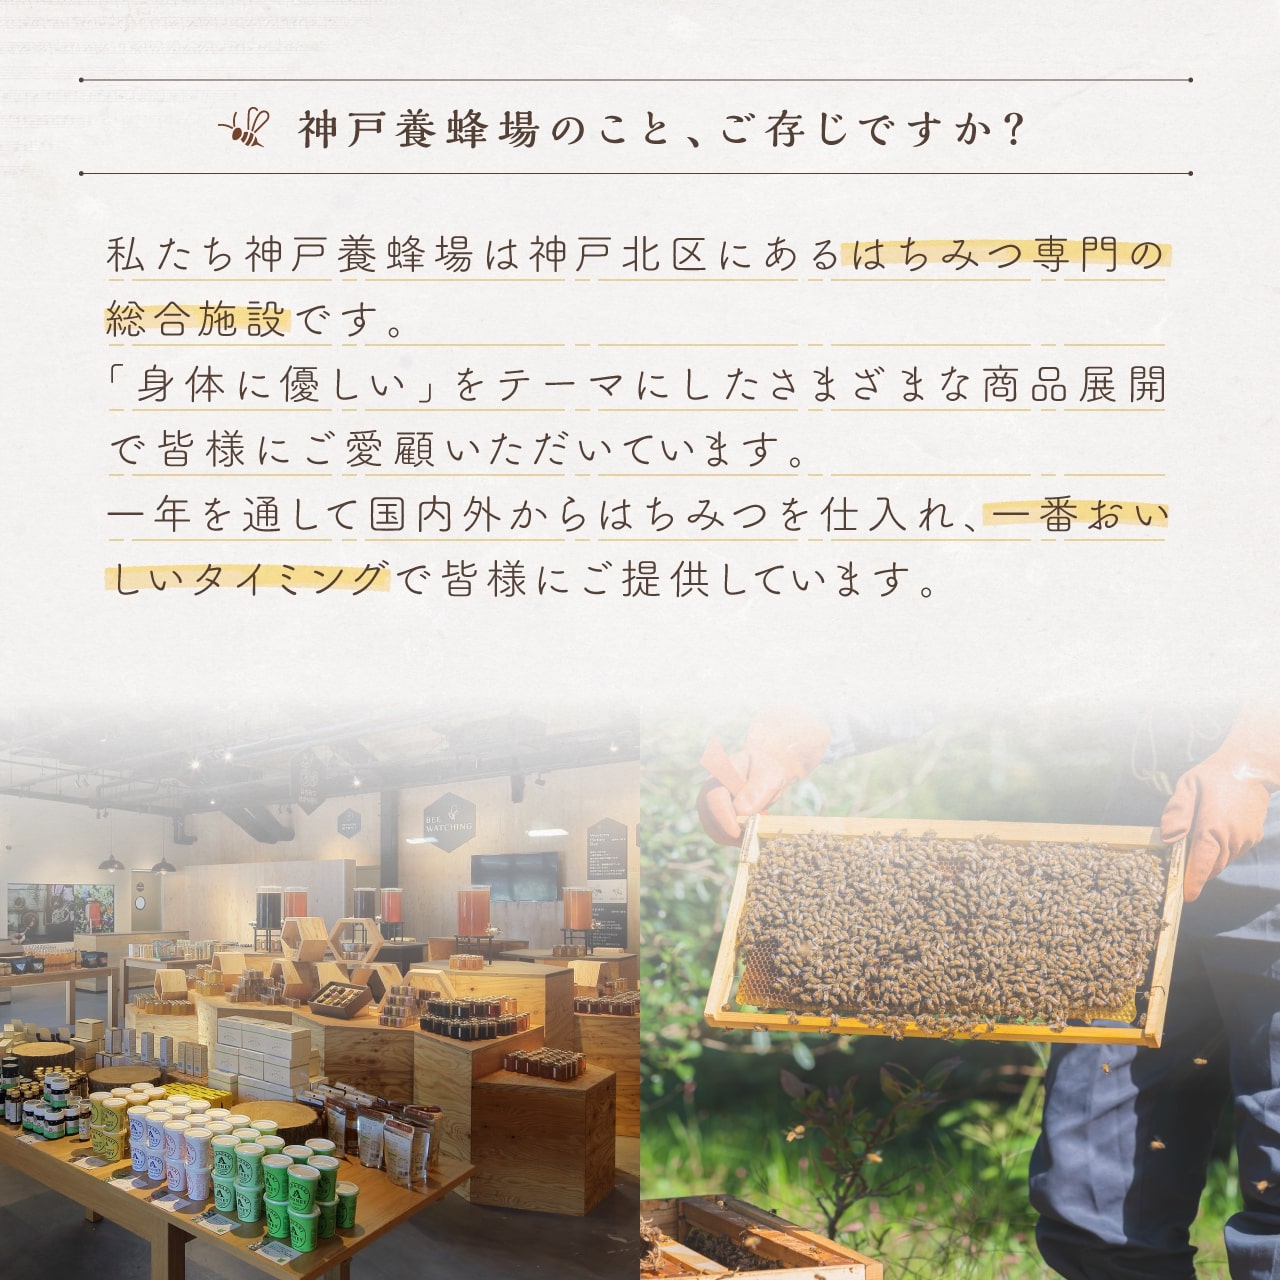 神戸養蜂場はハチミツ専門の総合施設です